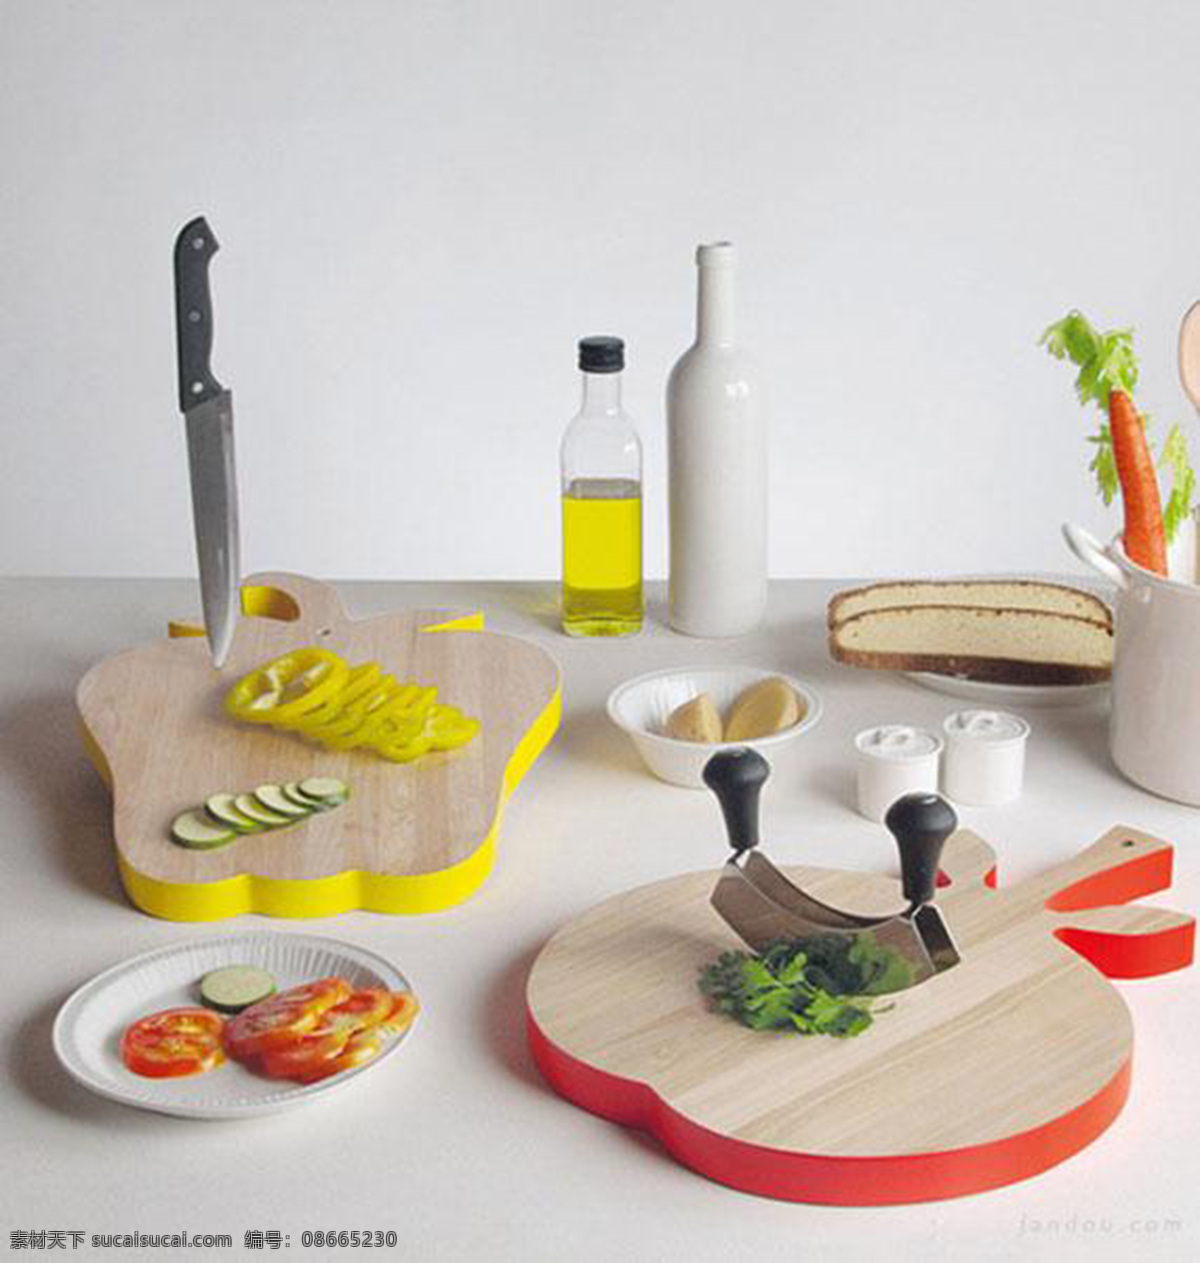 蔬菜 形状 创意 切菜板 产品设计 工业设计 灵感 小饰品 新颖